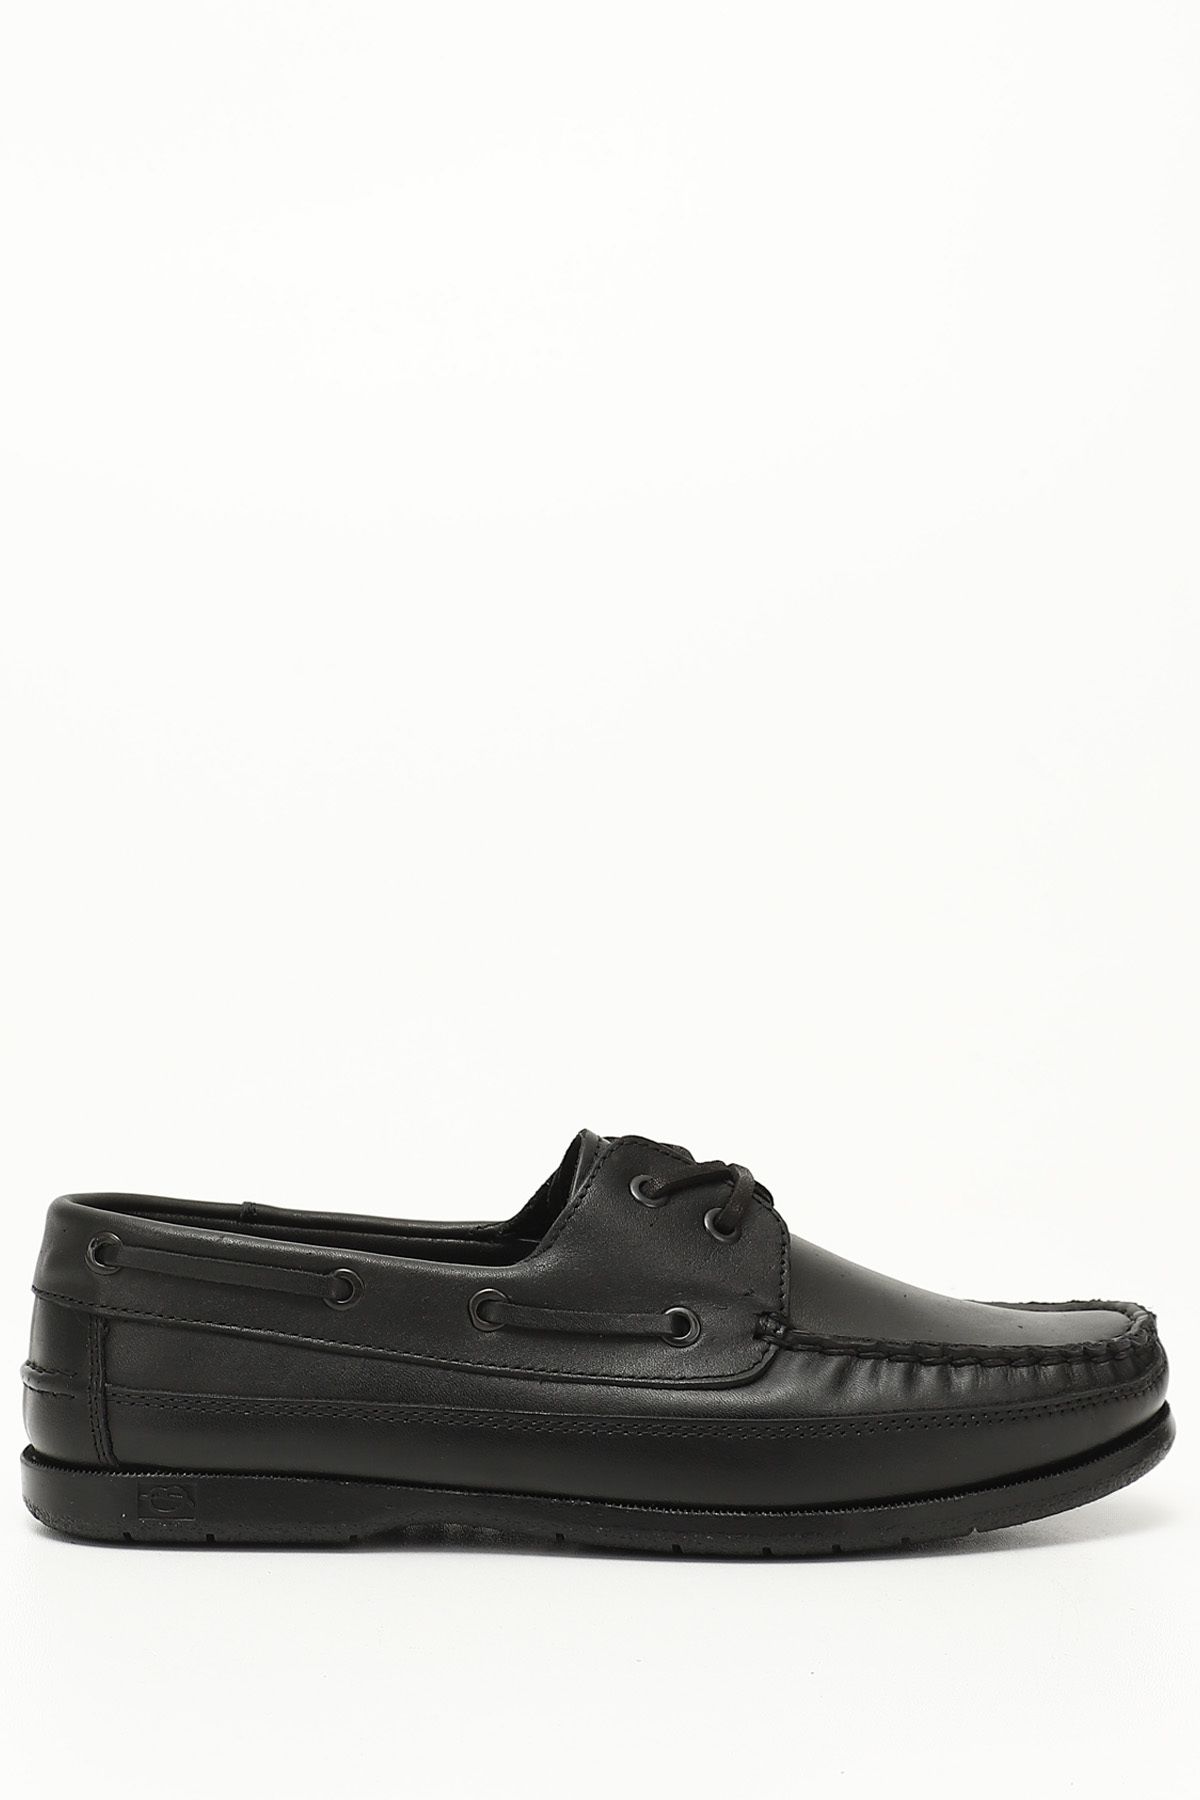 GÖNDERİ(R) Siyah Gön Hakiki Deri Bağcıklı Erkek Günlük Ayakkabı 26490